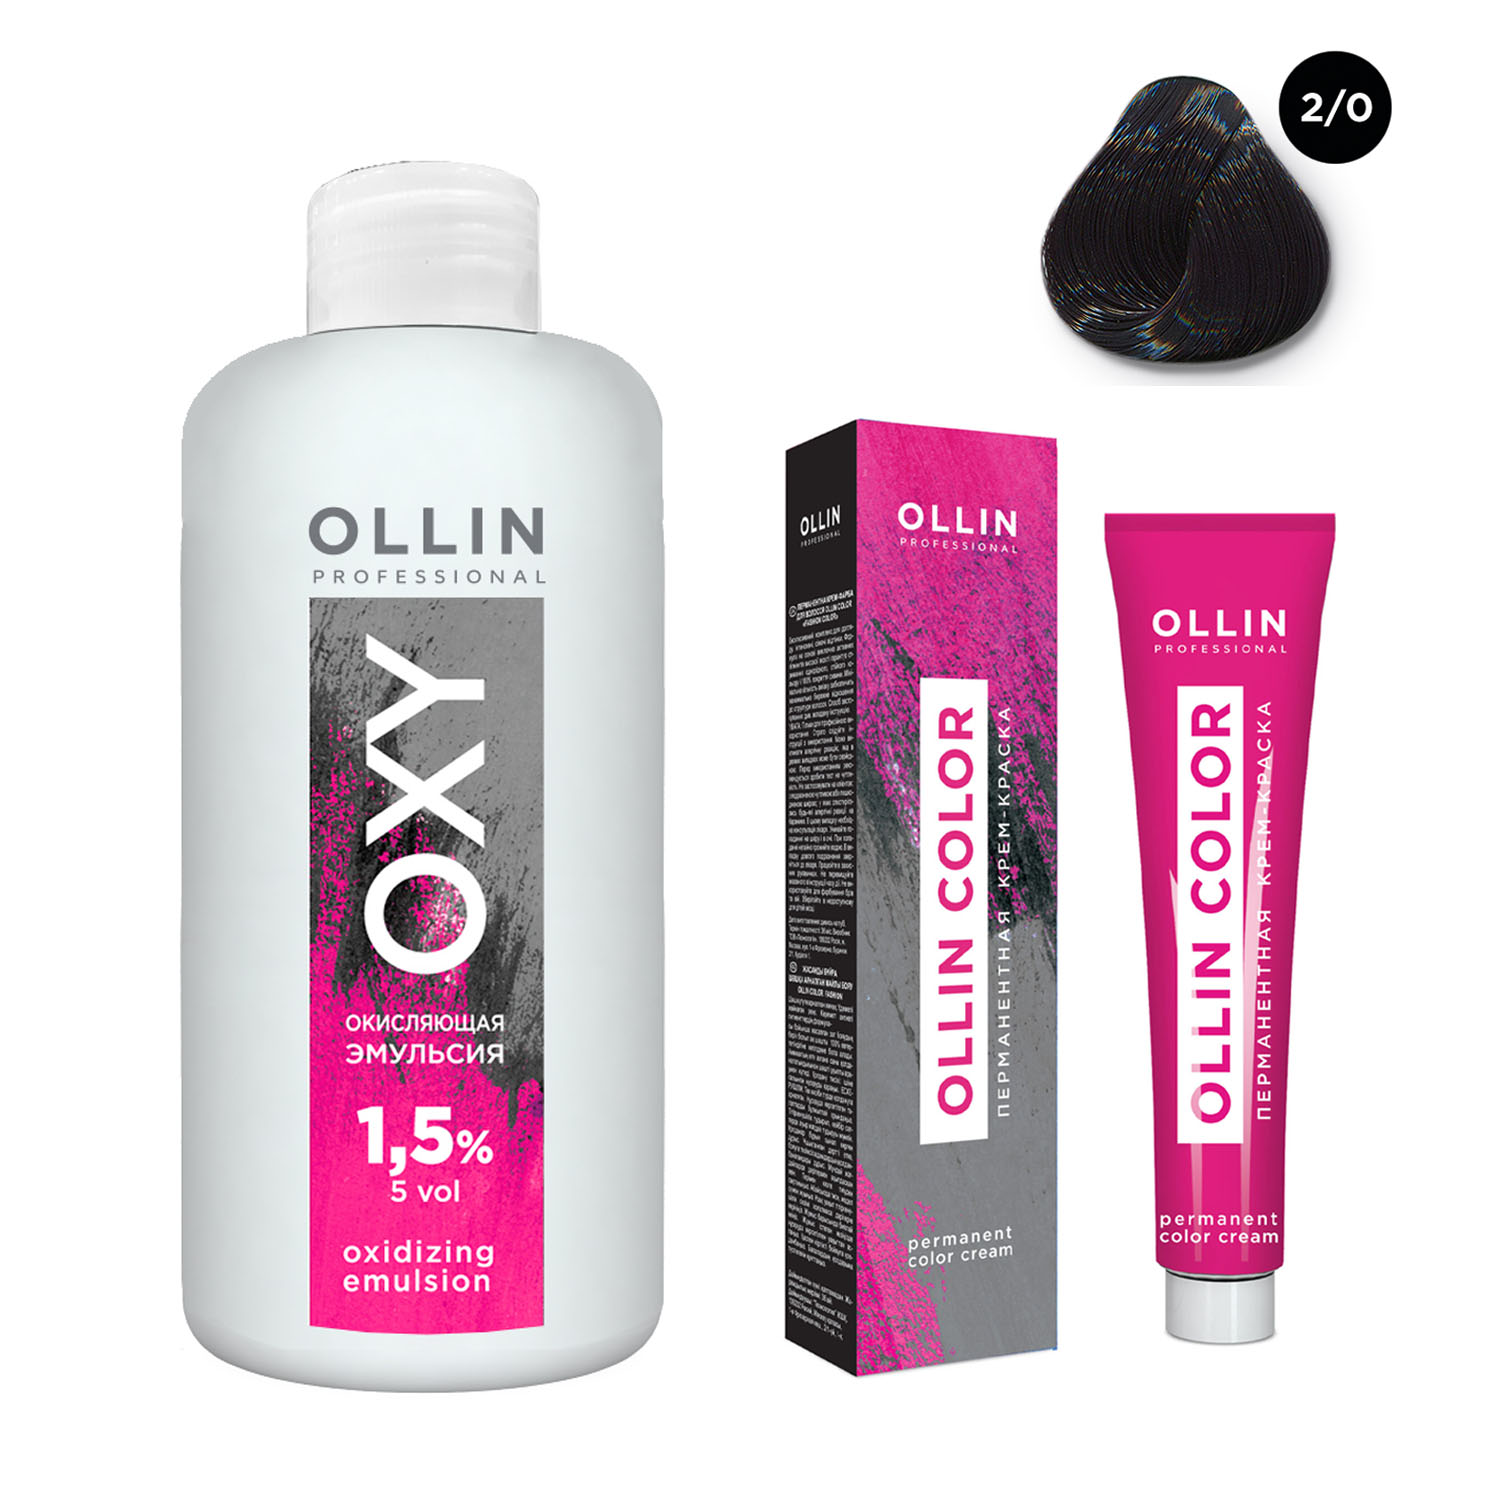 Ollin Professional Набор Перманентная крем-краска для волос Ollin Color оттенок 2/0 черный 100 мл + Окисляющая эмульсия Oxy 1,5% 150 мл (Ollin Professional, Ollin Color)